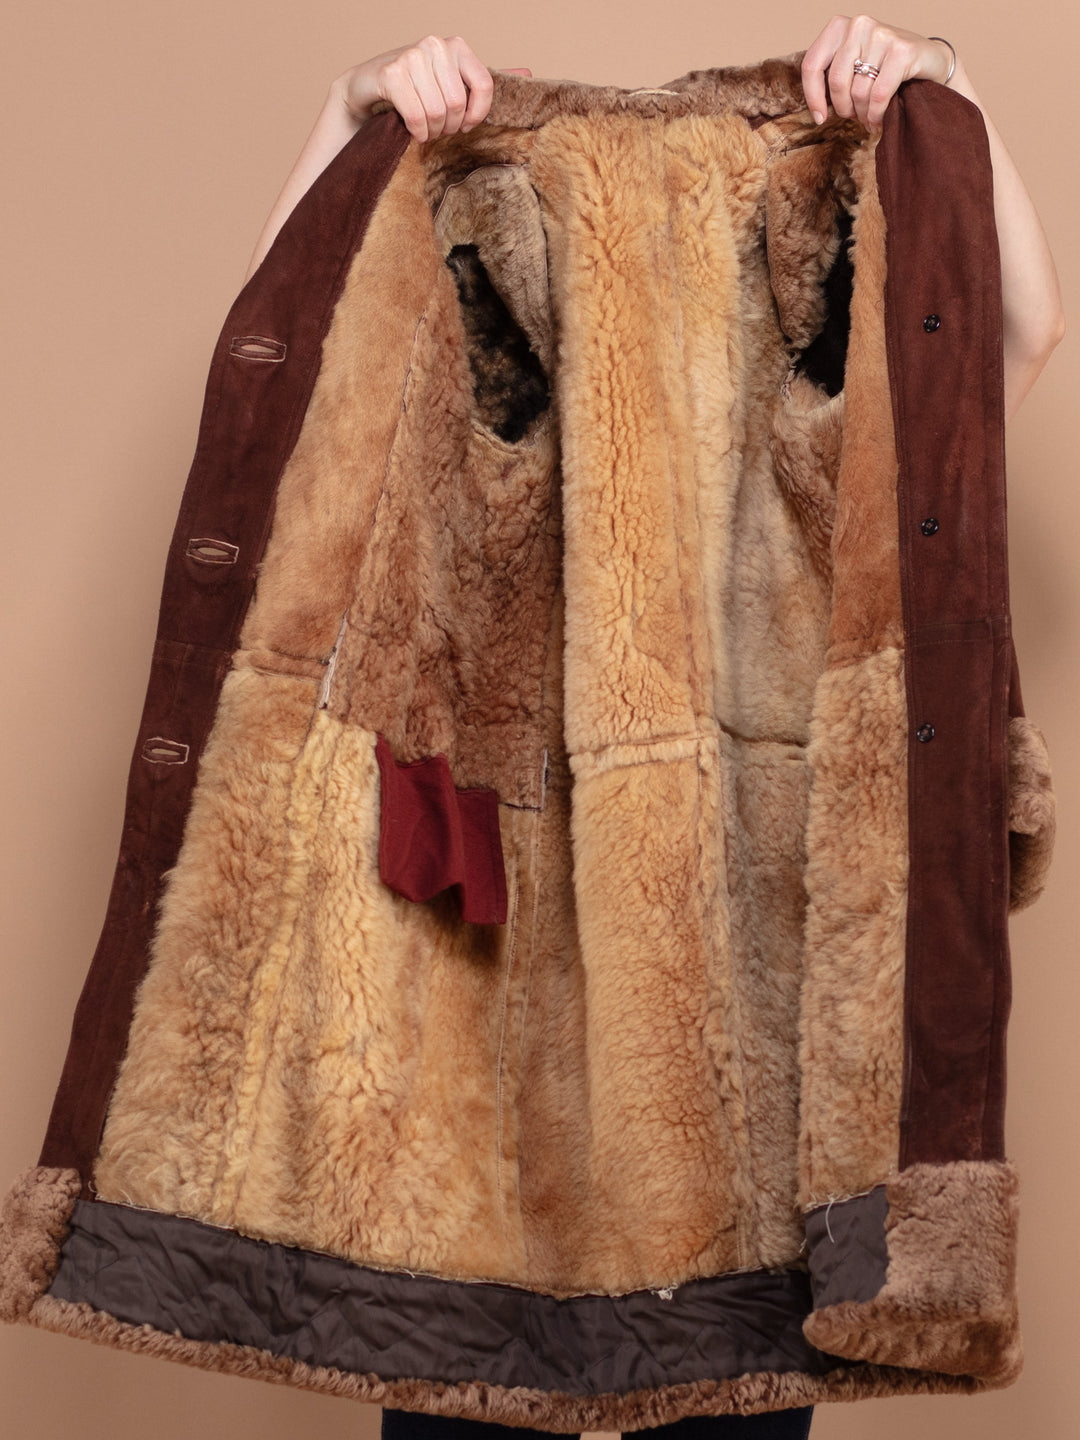 Sheepskin Long Coat, Size Large L Warm Shearling Fur Coat, Brown Sheepskin Overcoat, Oversized Sheepskin Coat, Penny Lane, Western Outerwear